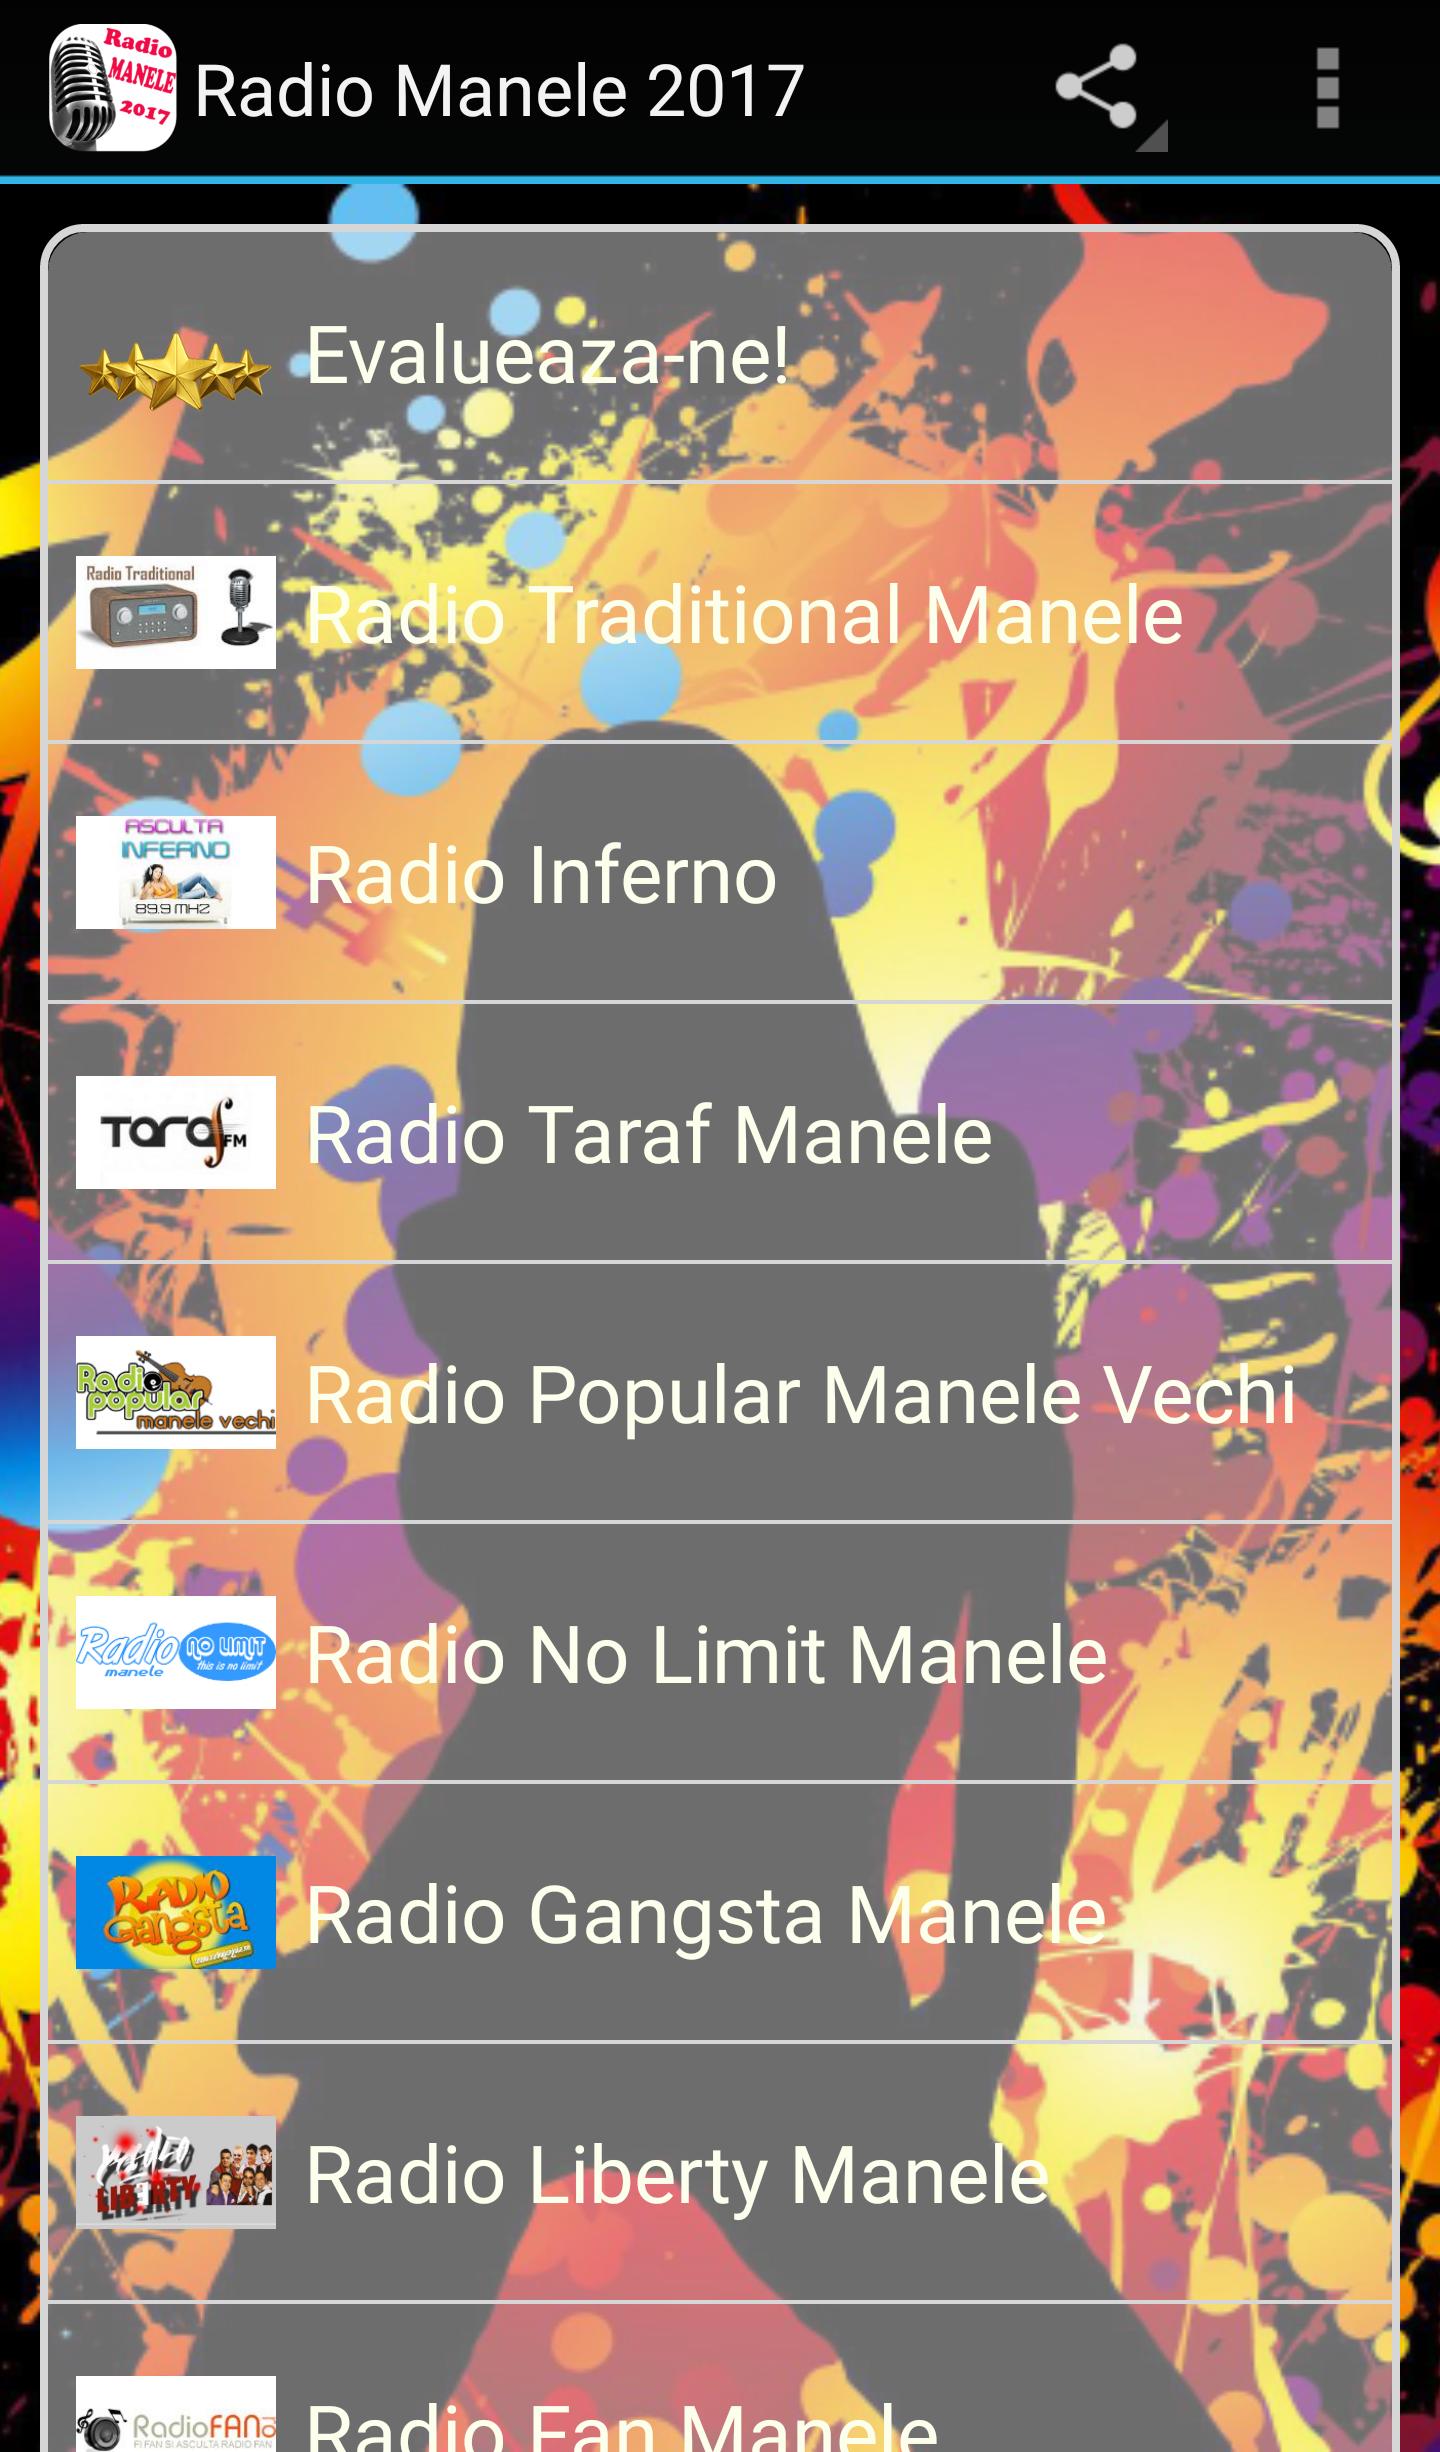 Manele Gratis for Android - APK Download